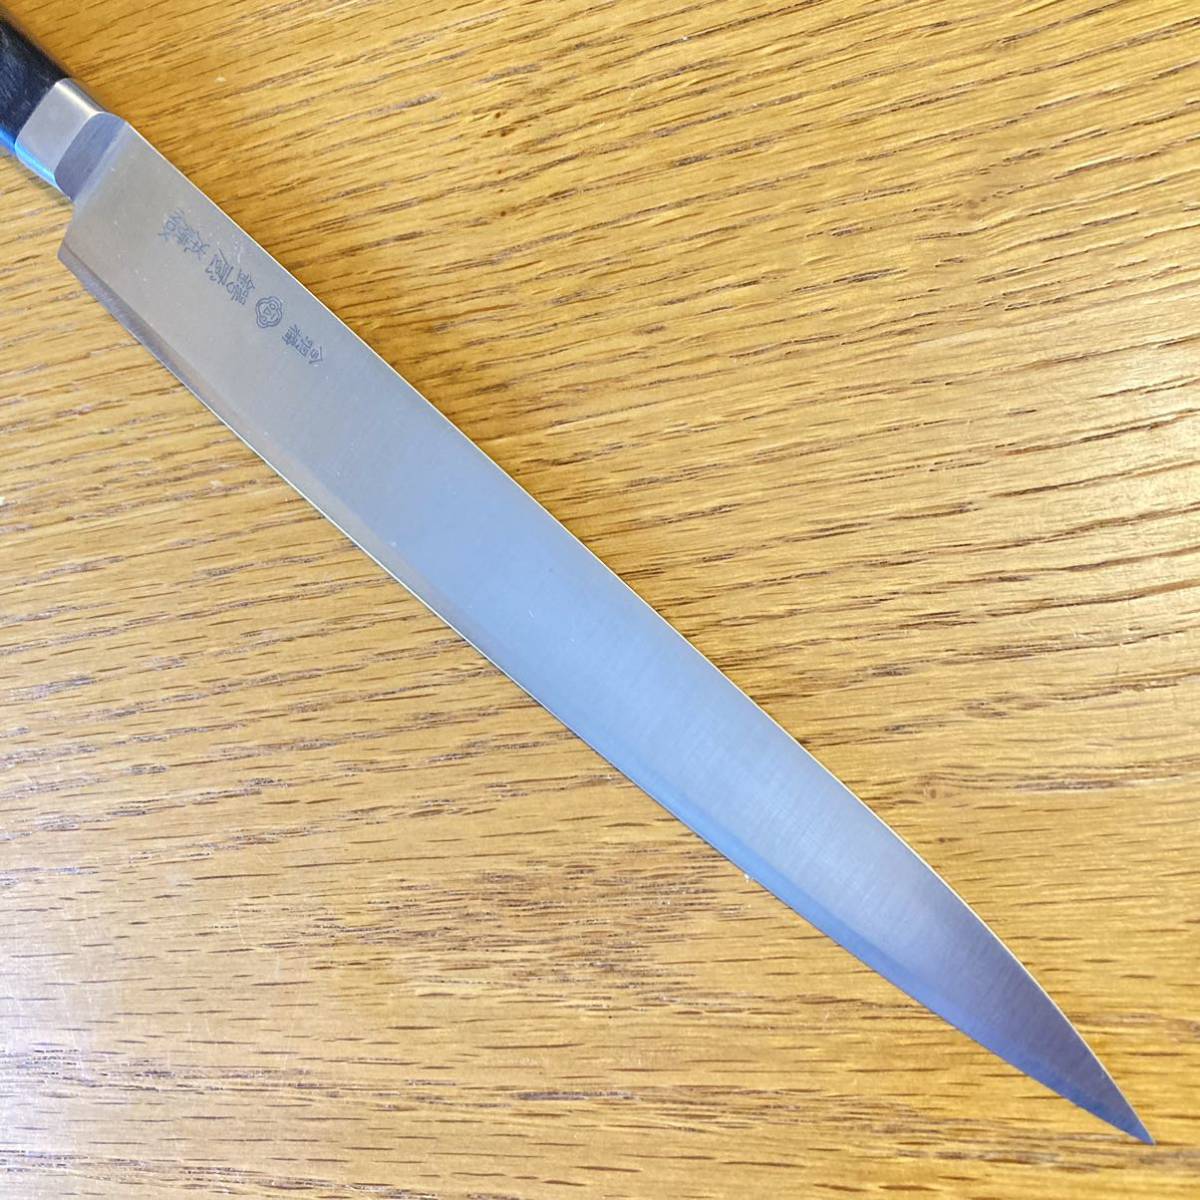 鍔屋 本焼 INOX 筋引包丁 庖丁 洋包丁 刃渡約24cm Japanese Knife 刃物 の画像4